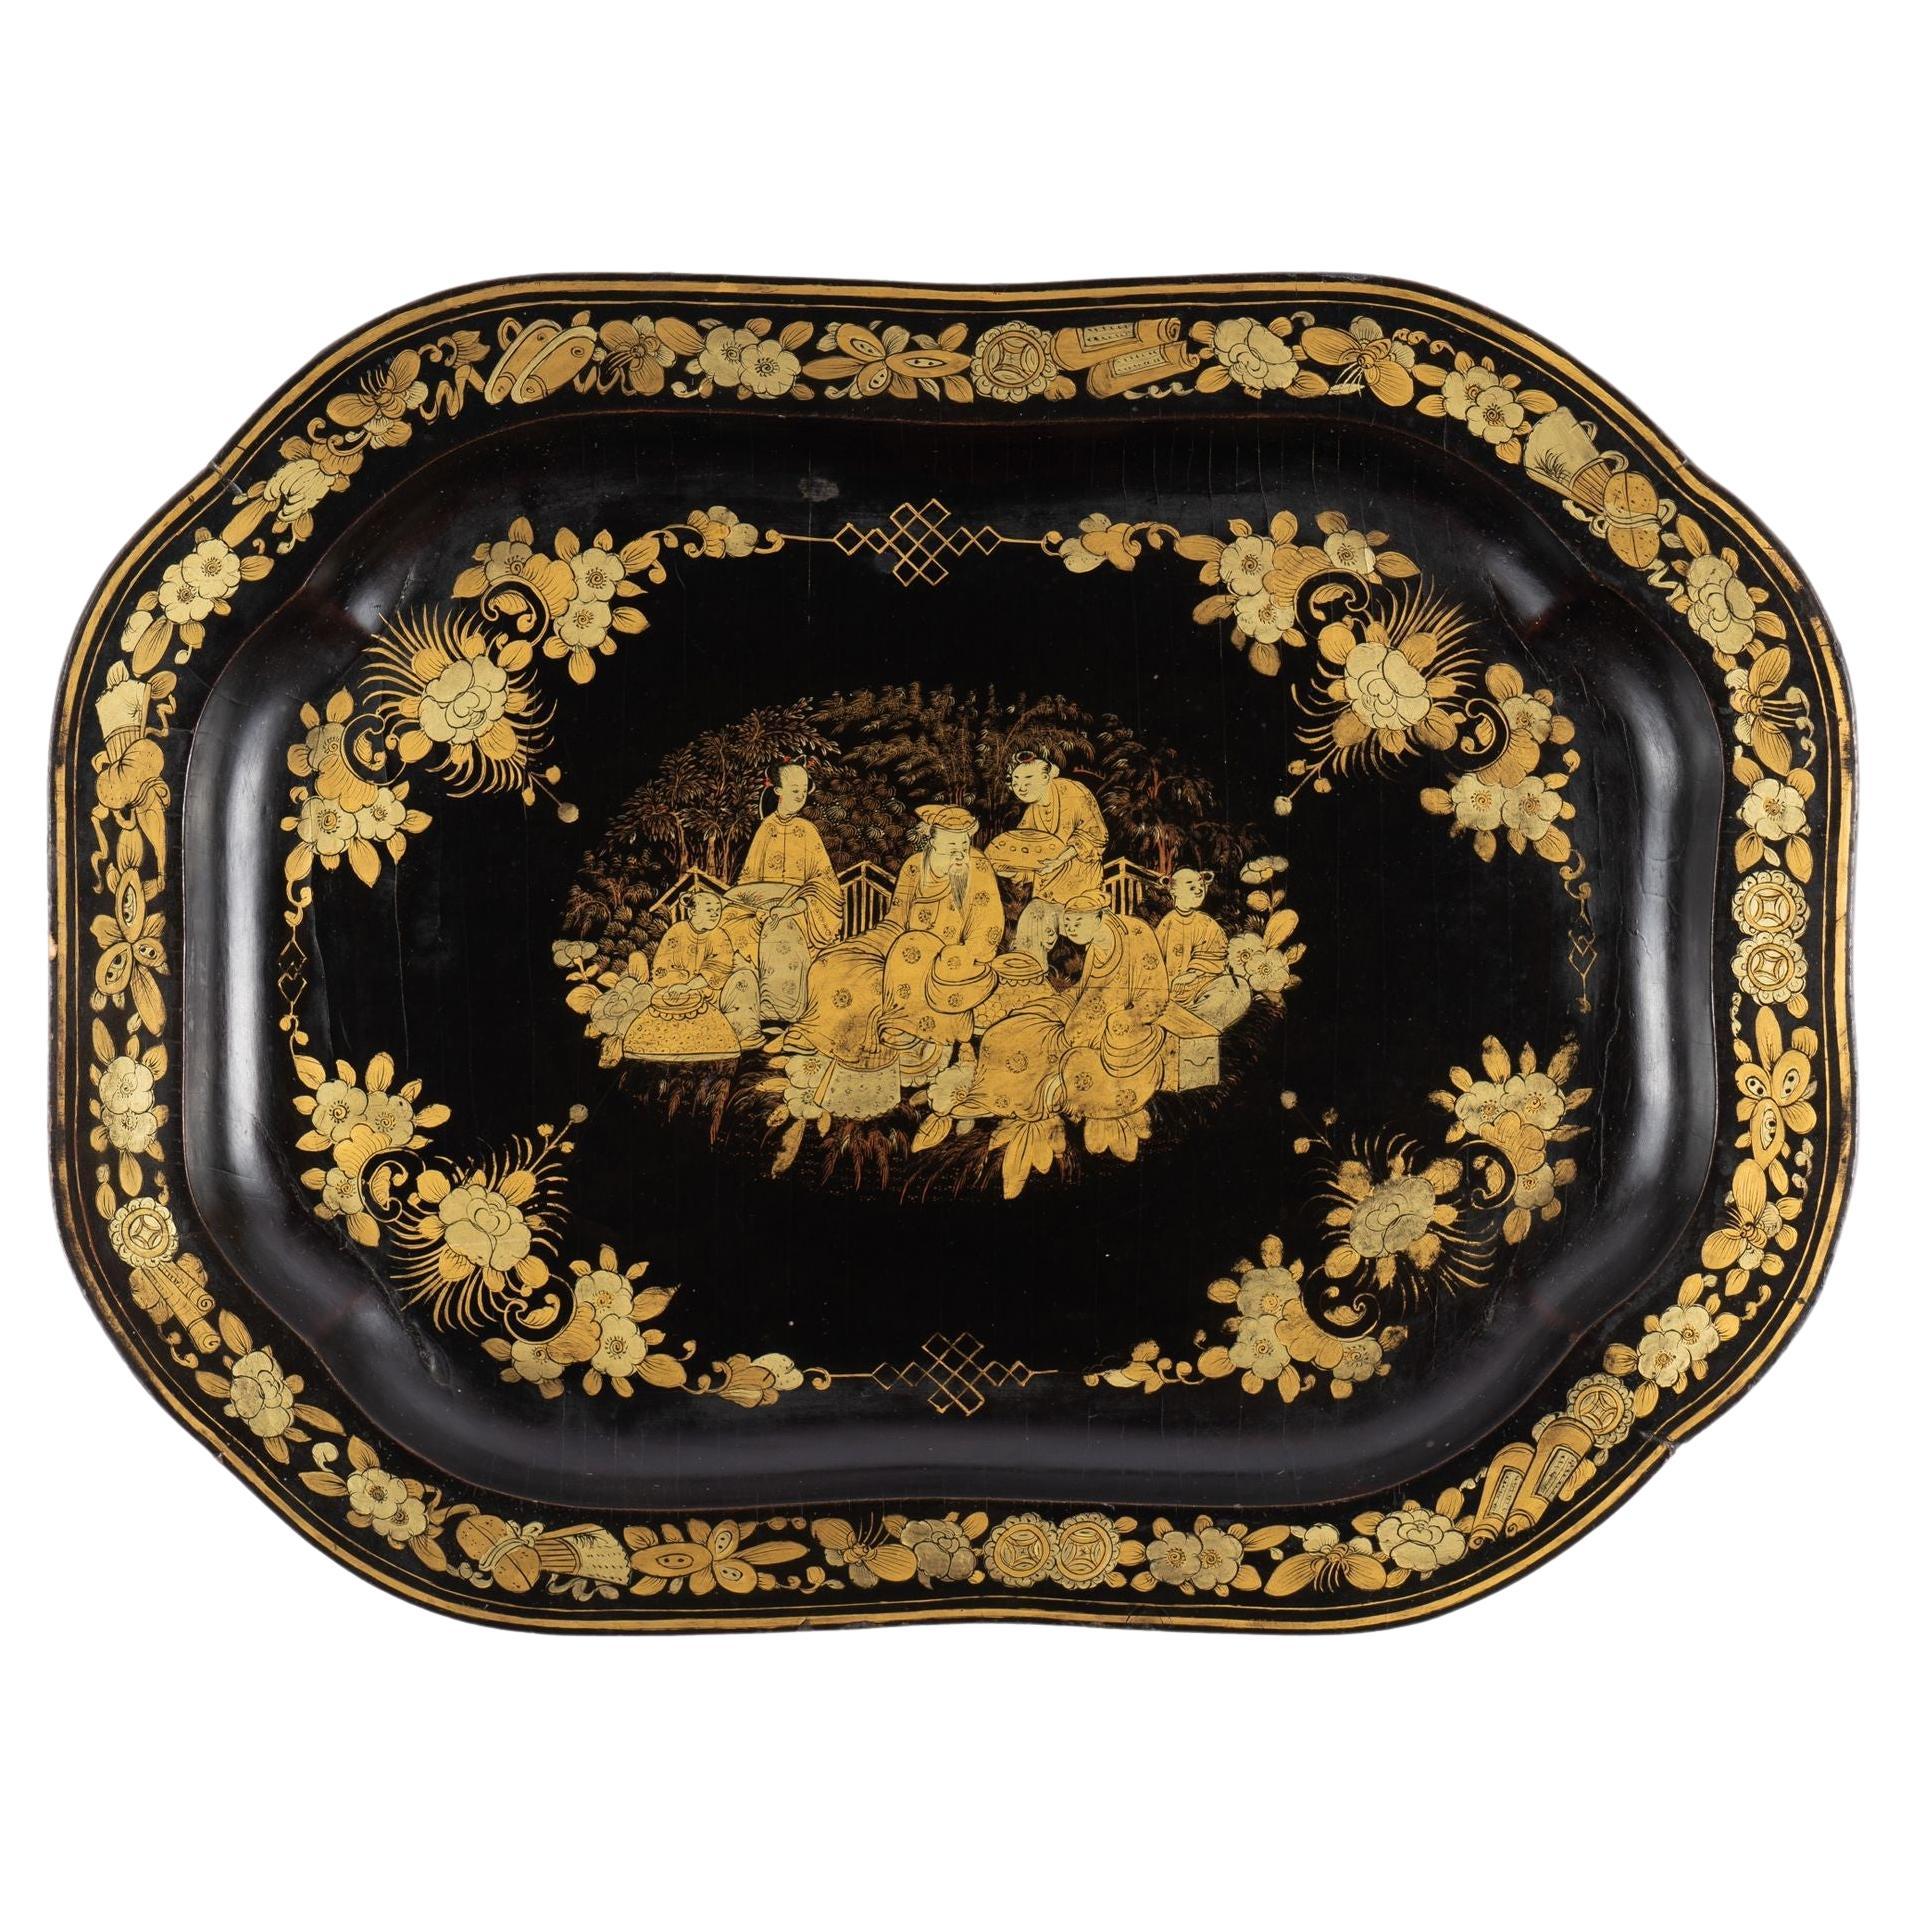 Chinesisches achteckiges Tablett aus vergoldetem Lack, um 1825